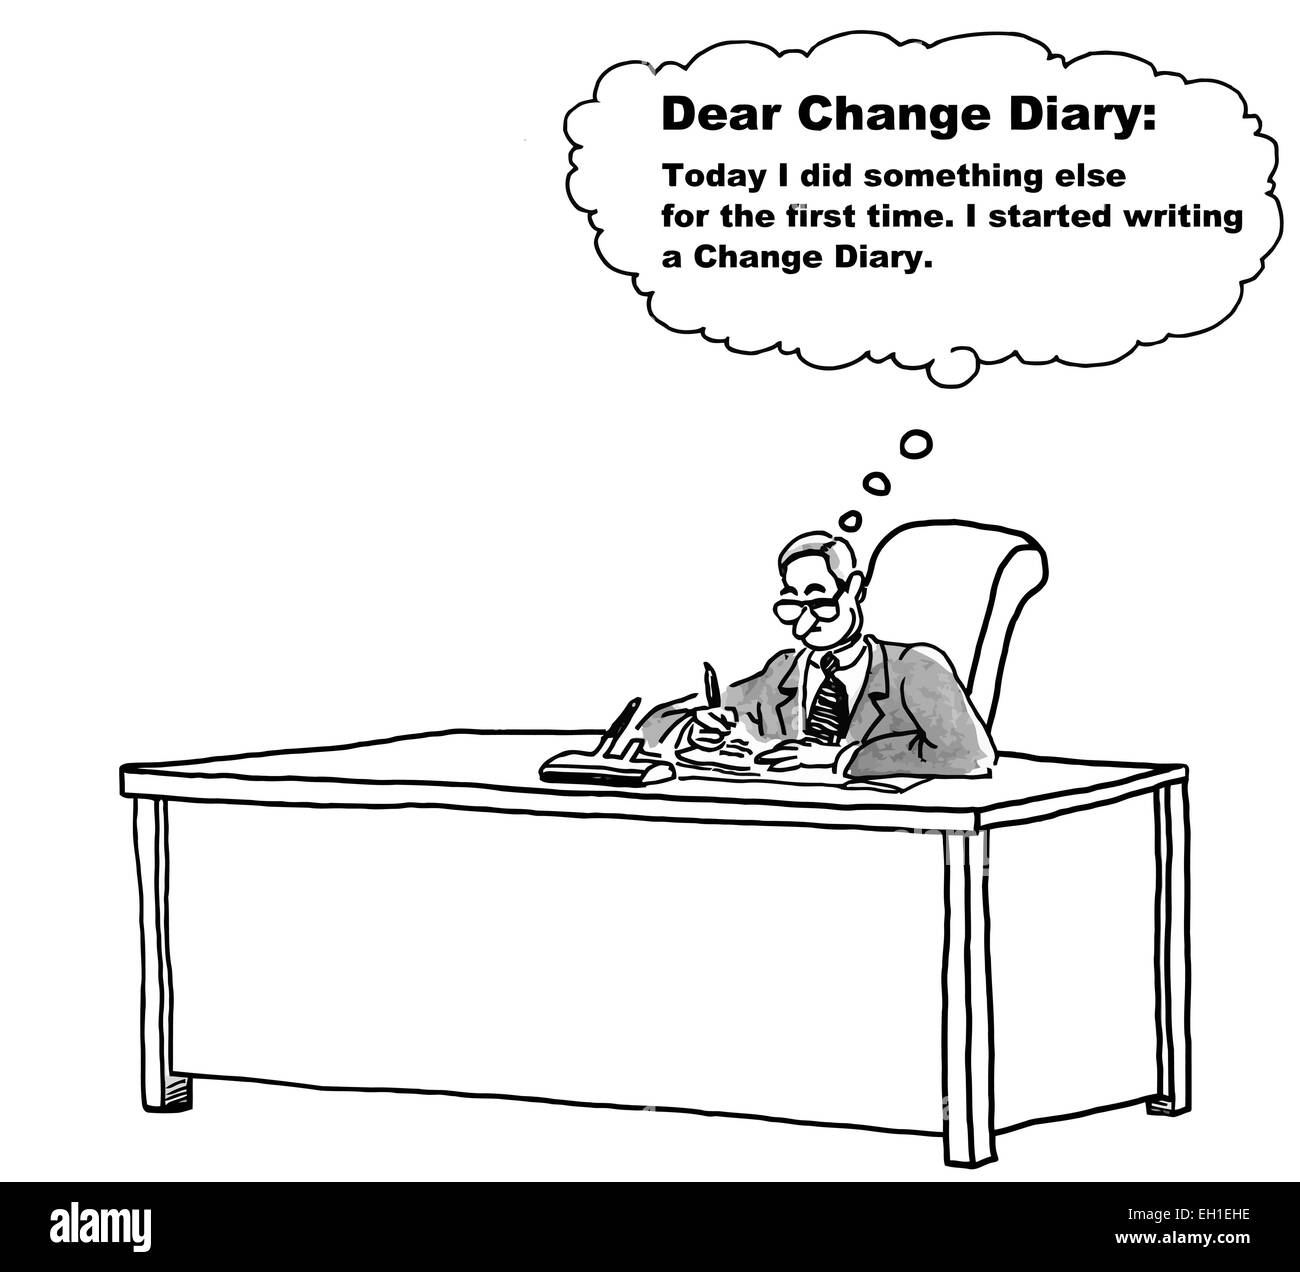 Karikatur von Unternehmer denken, lieber Änderung Tagebuch: heute habe ich etwas anderes zum ersten Mal.  Ich begann eine Änderung... Stock Vektor